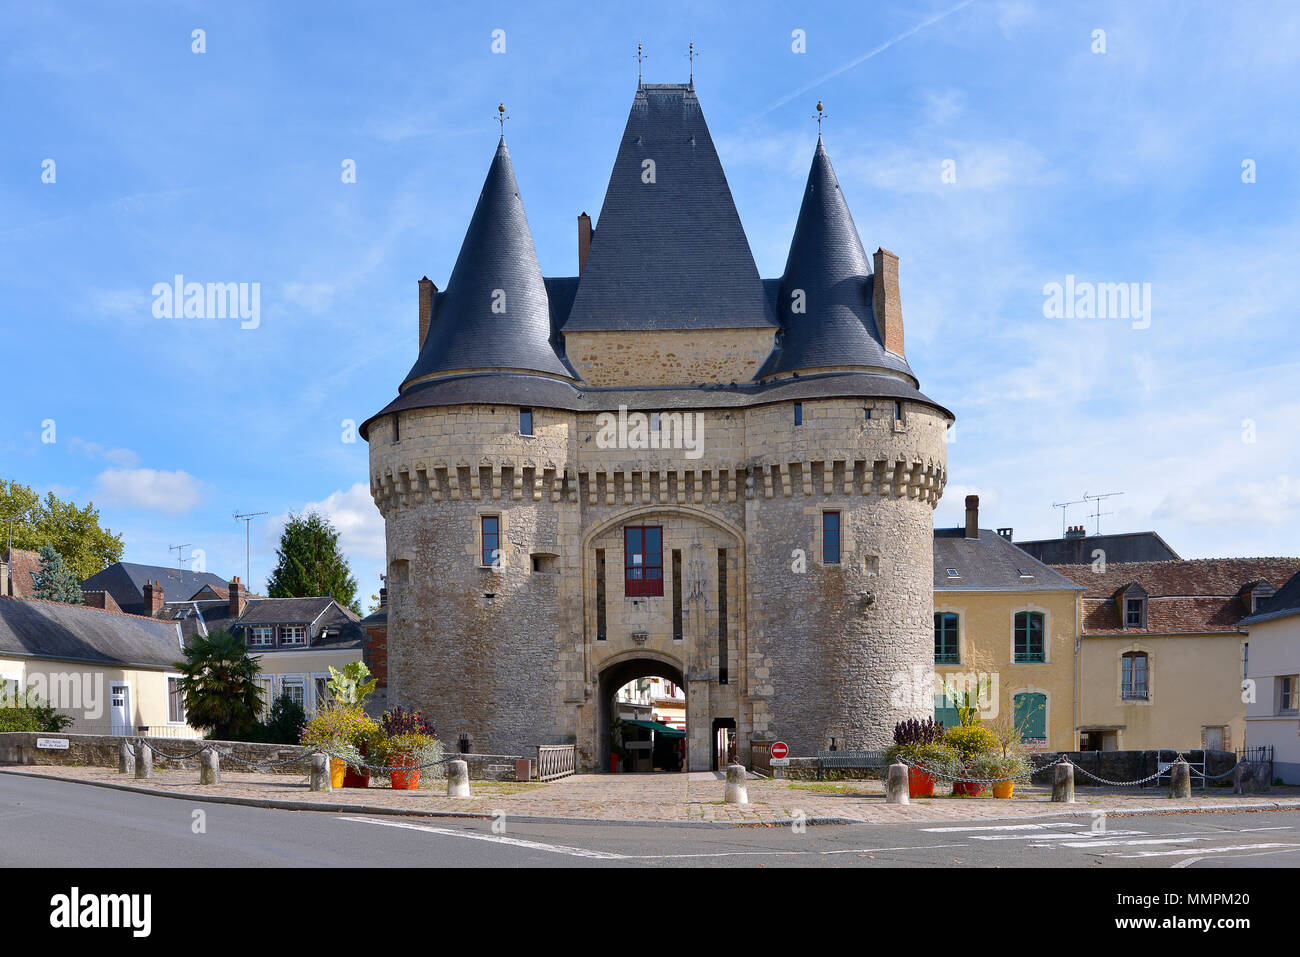 La porta fortificata Saint-Julien a La-Ferté-Bernard, un comune nel dipartimento della Sarthe nella regione Pays de la Loire nel nord-ovest della Francia. Foto Stock